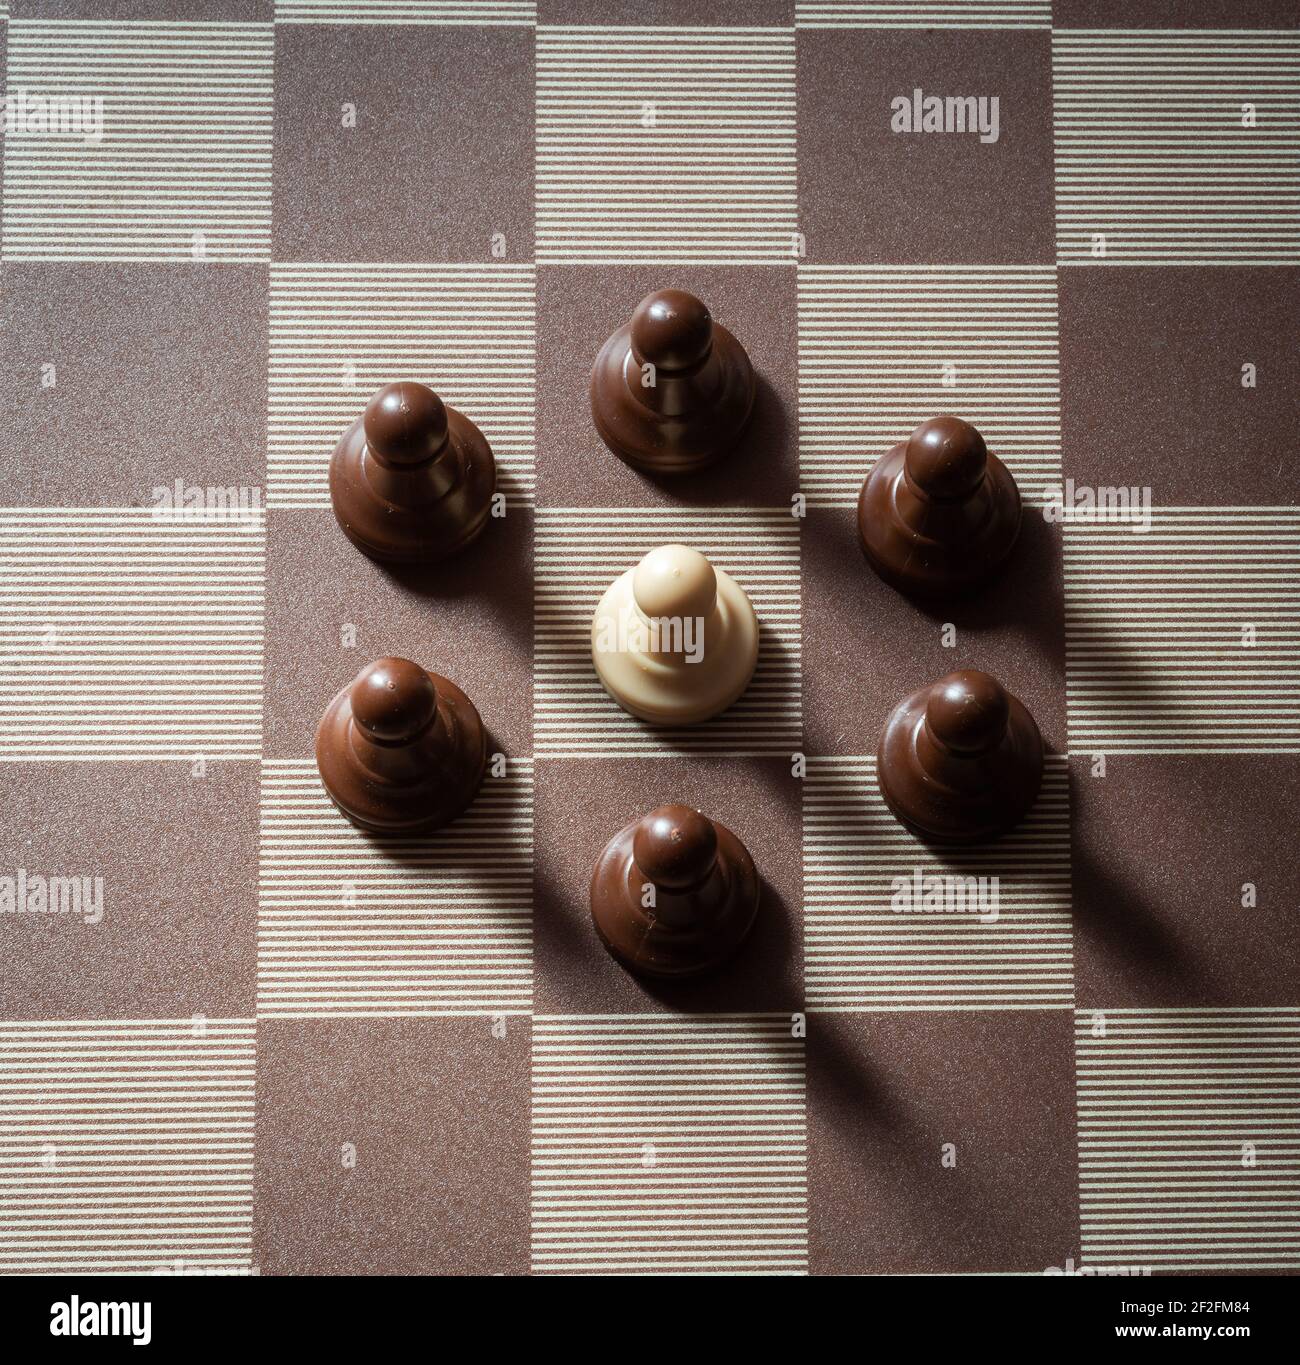 peón en el tablero de ajedrez rodeado por el concepto adversity, discimination, iguality. Foto de stock